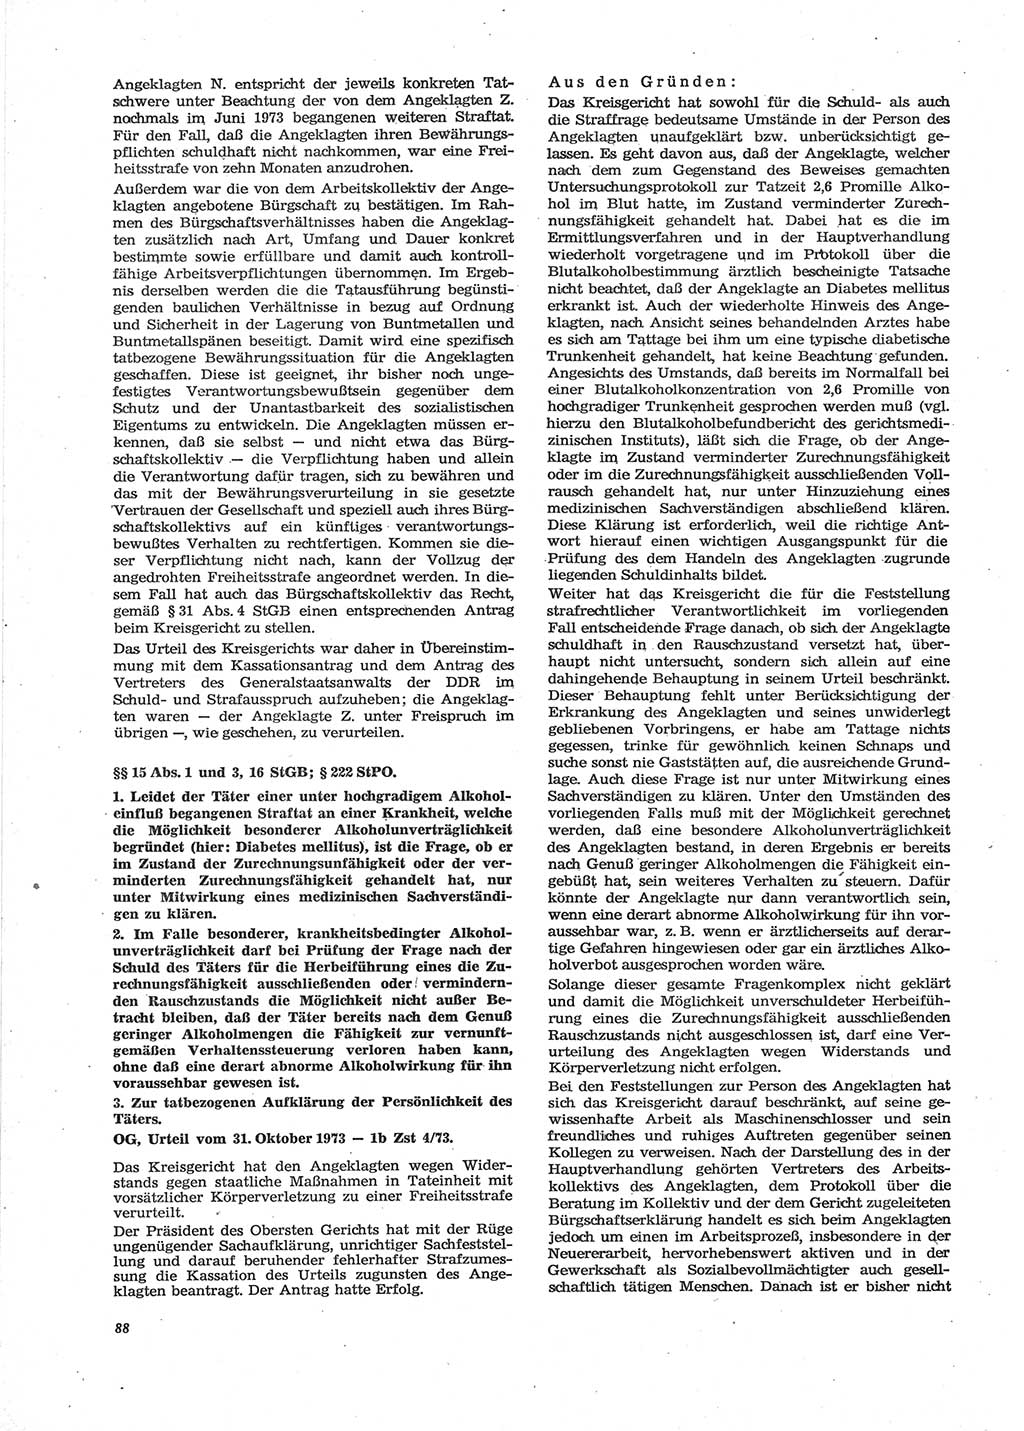 Neue Justiz (NJ), Zeitschrift für Recht und Rechtswissenschaft [Deutsche Demokratische Republik (DDR)], 28. Jahrgang 1974, Seite 88 (NJ DDR 1974, S. 88)